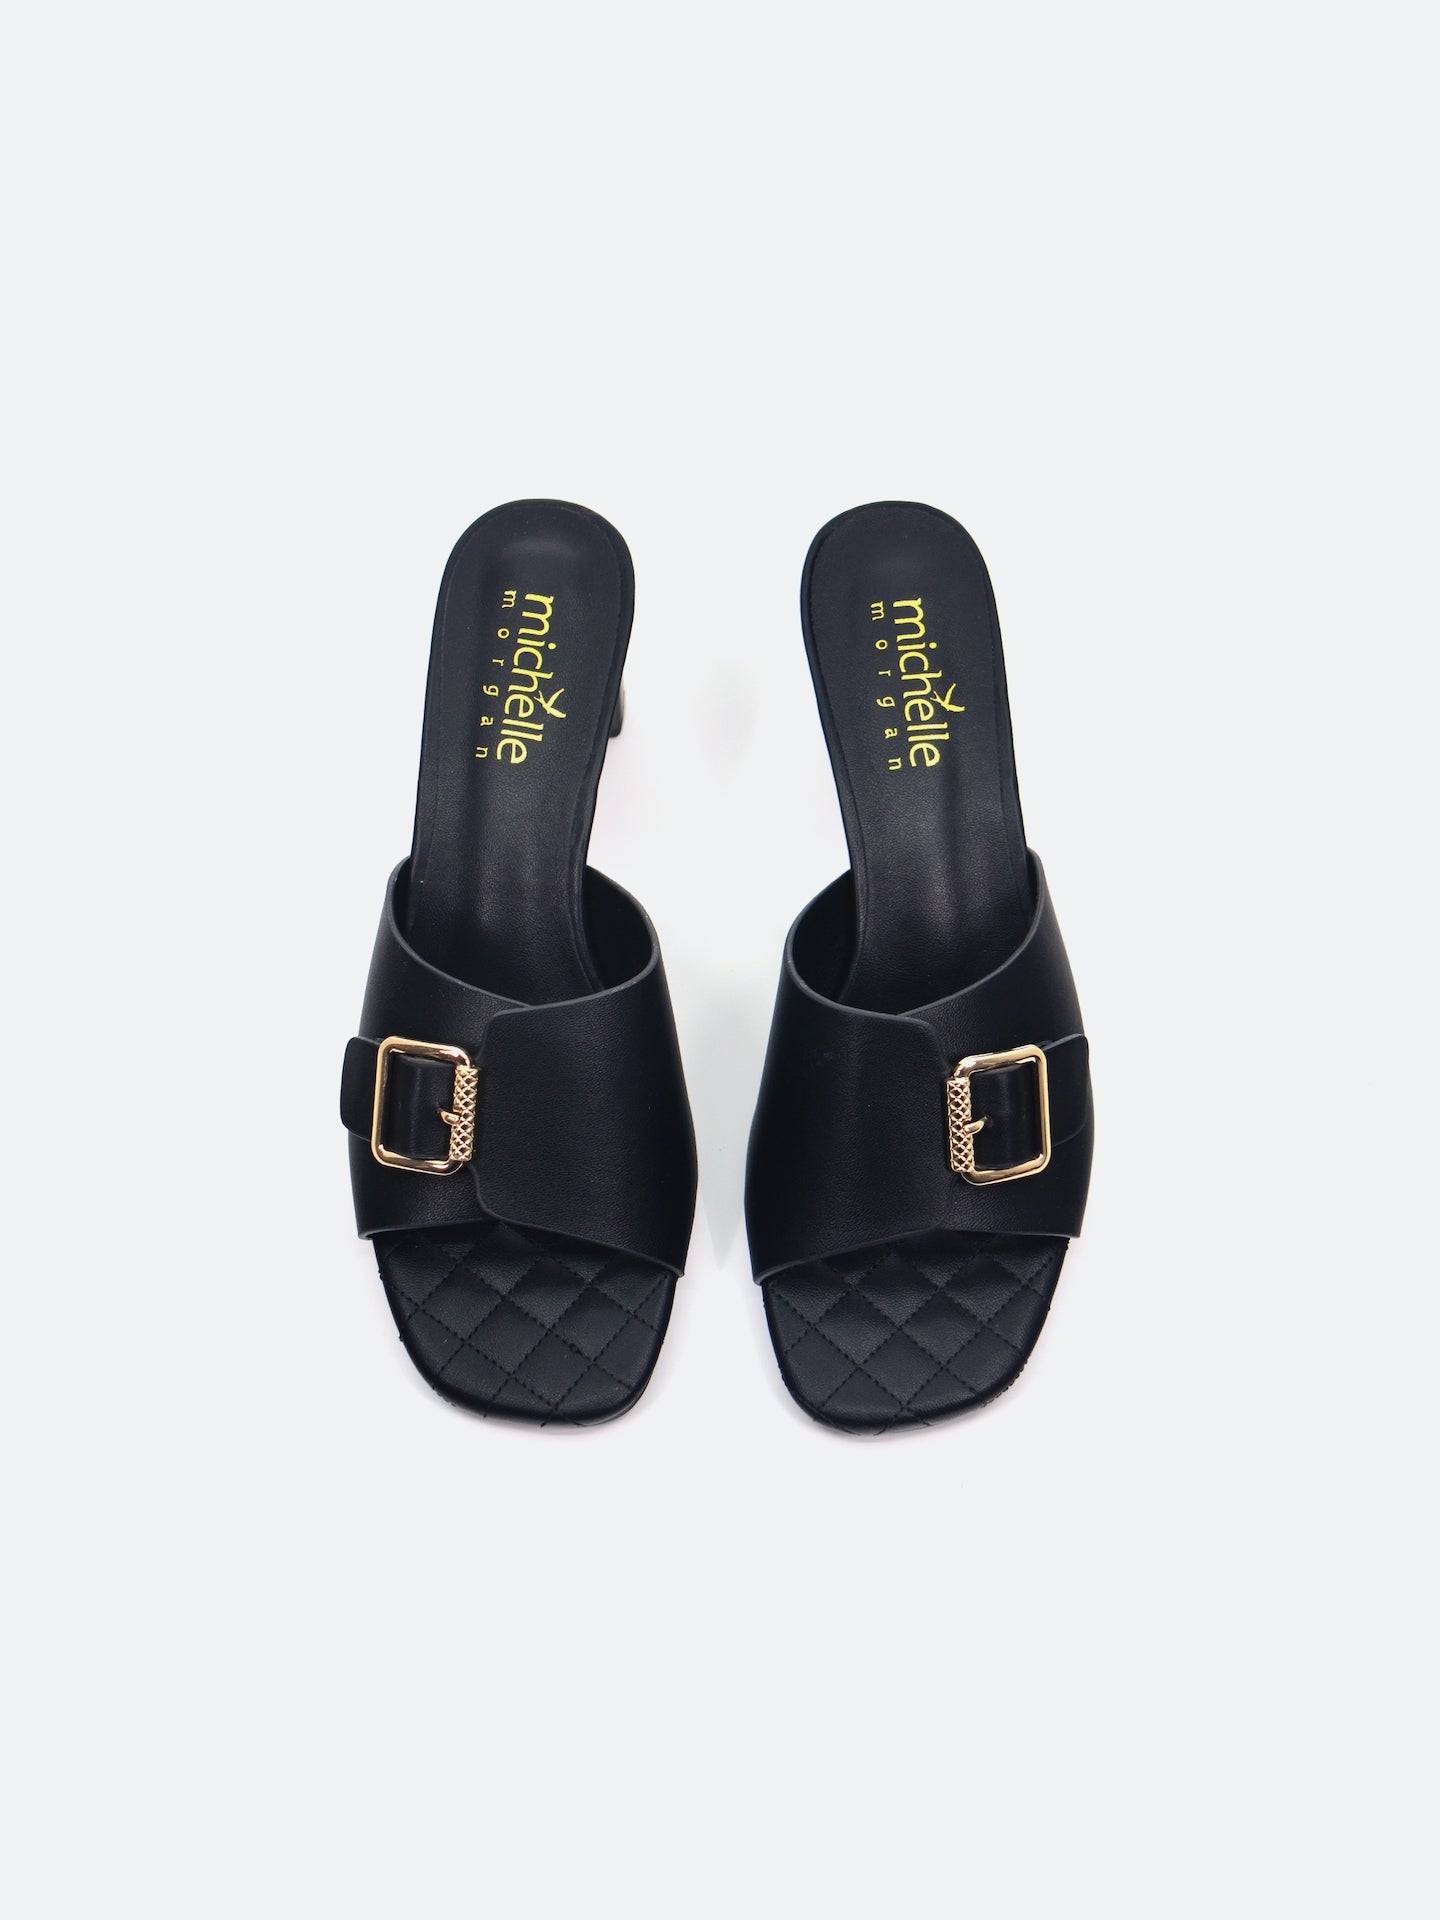 Michelle Morgan 113RJ282 Women's Heeled Sandals #color_Black